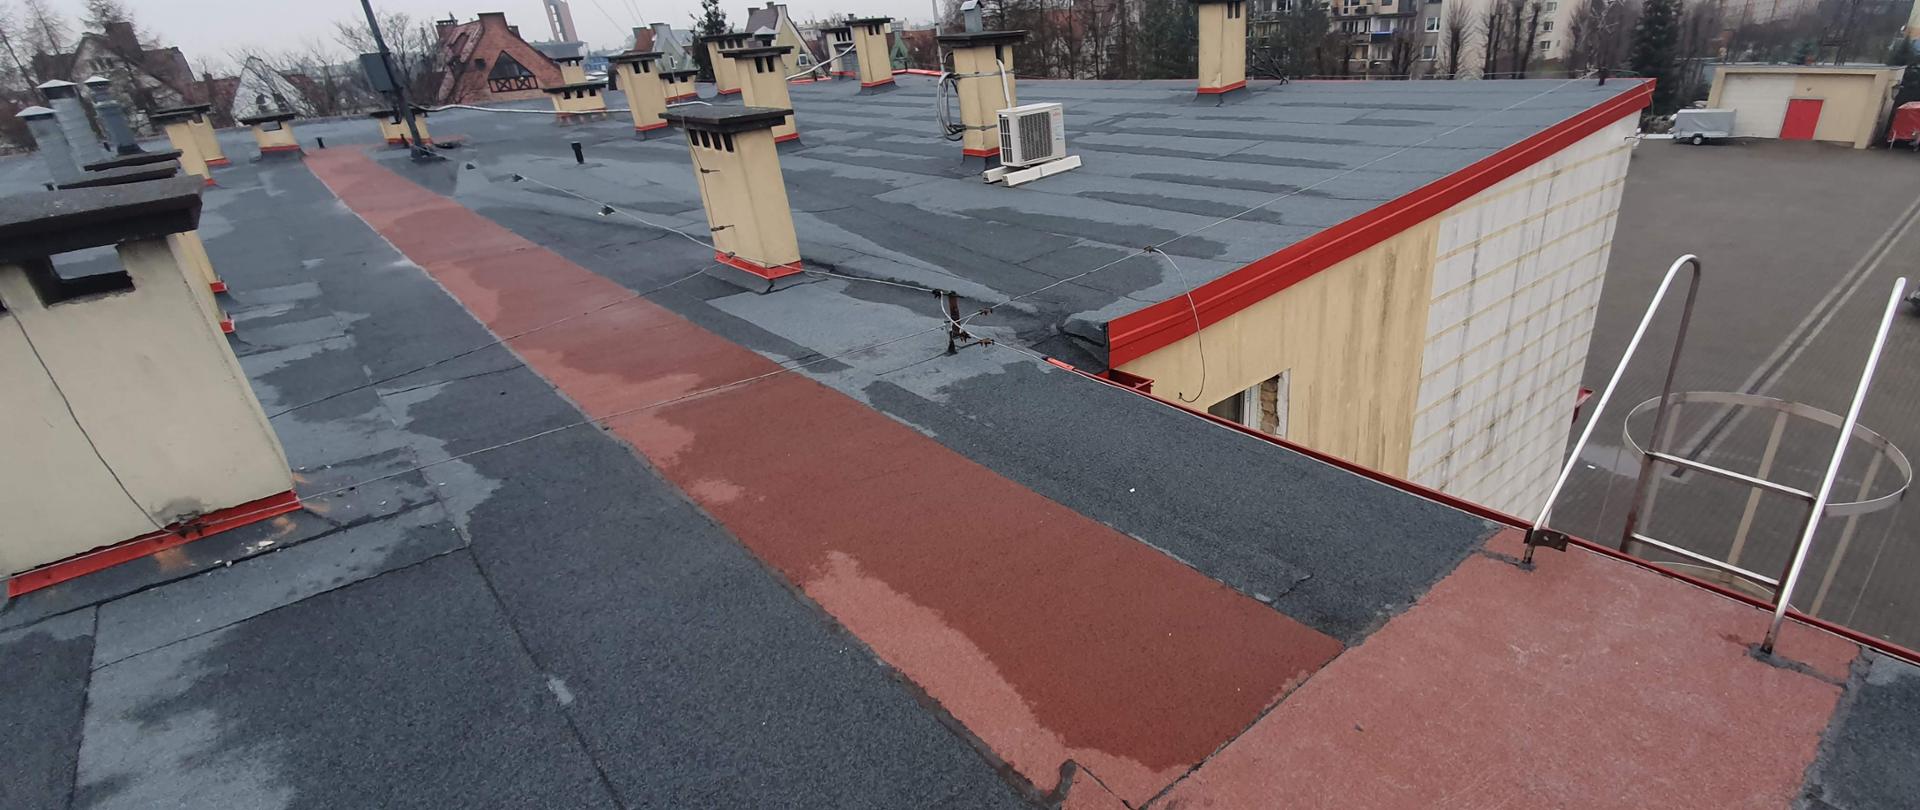 Dach budynku Komendy Powiatowej PSP w Chojnicach, ukazujące powierzchnie pokrycia dachu z papy termozgrzewalnej, widoczne kominy i instalacje znajdujące się na dachu. 